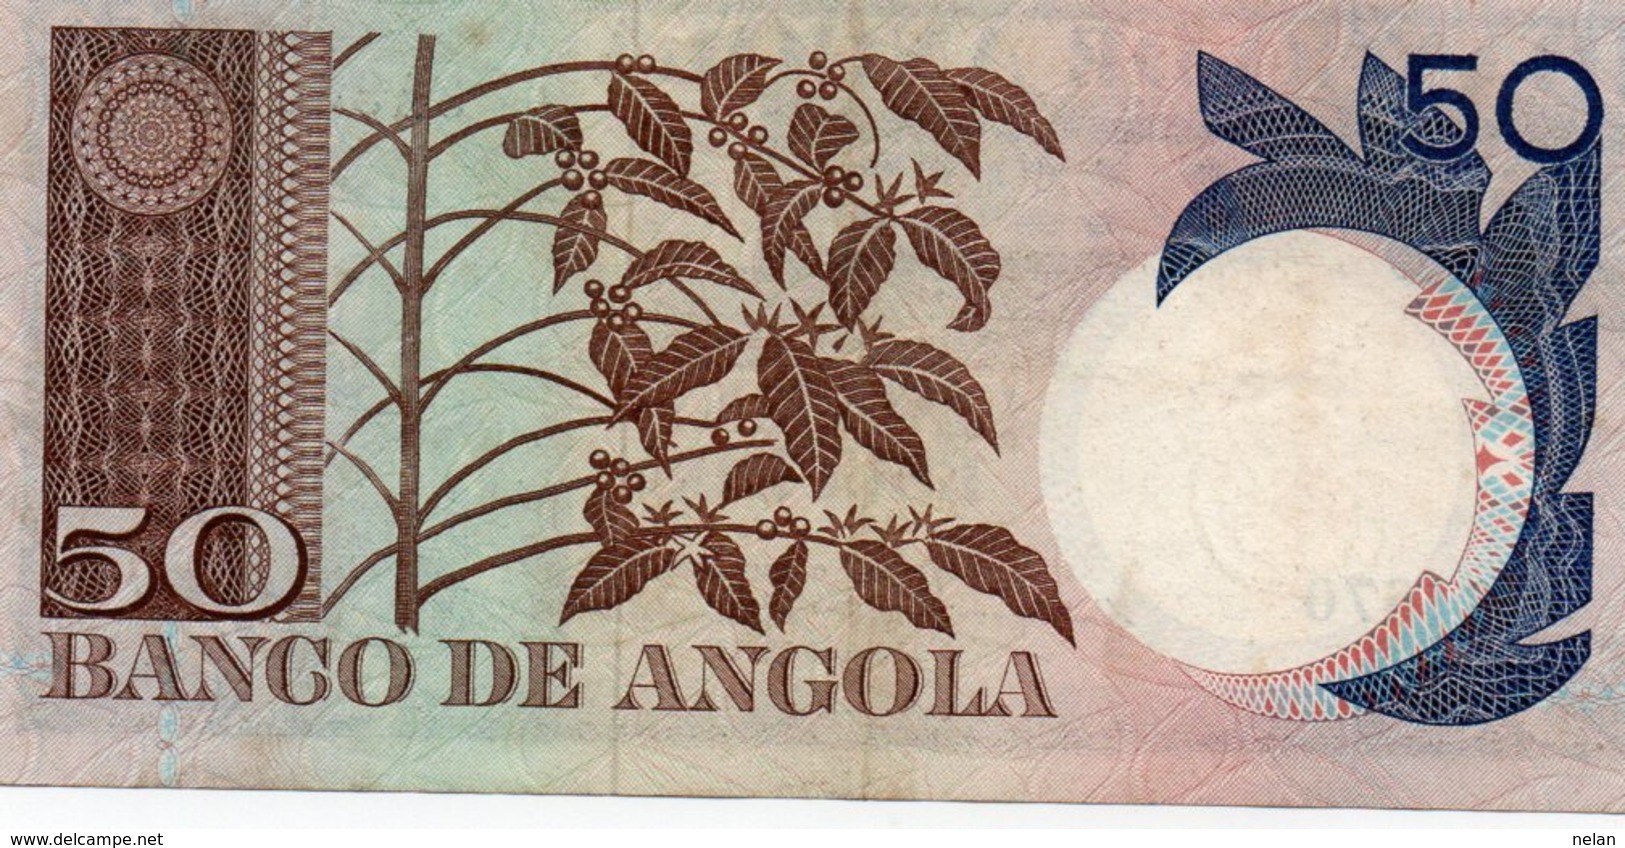 ANGOLA 50 ESCUDOS 1973  P-105  UNC - Angola